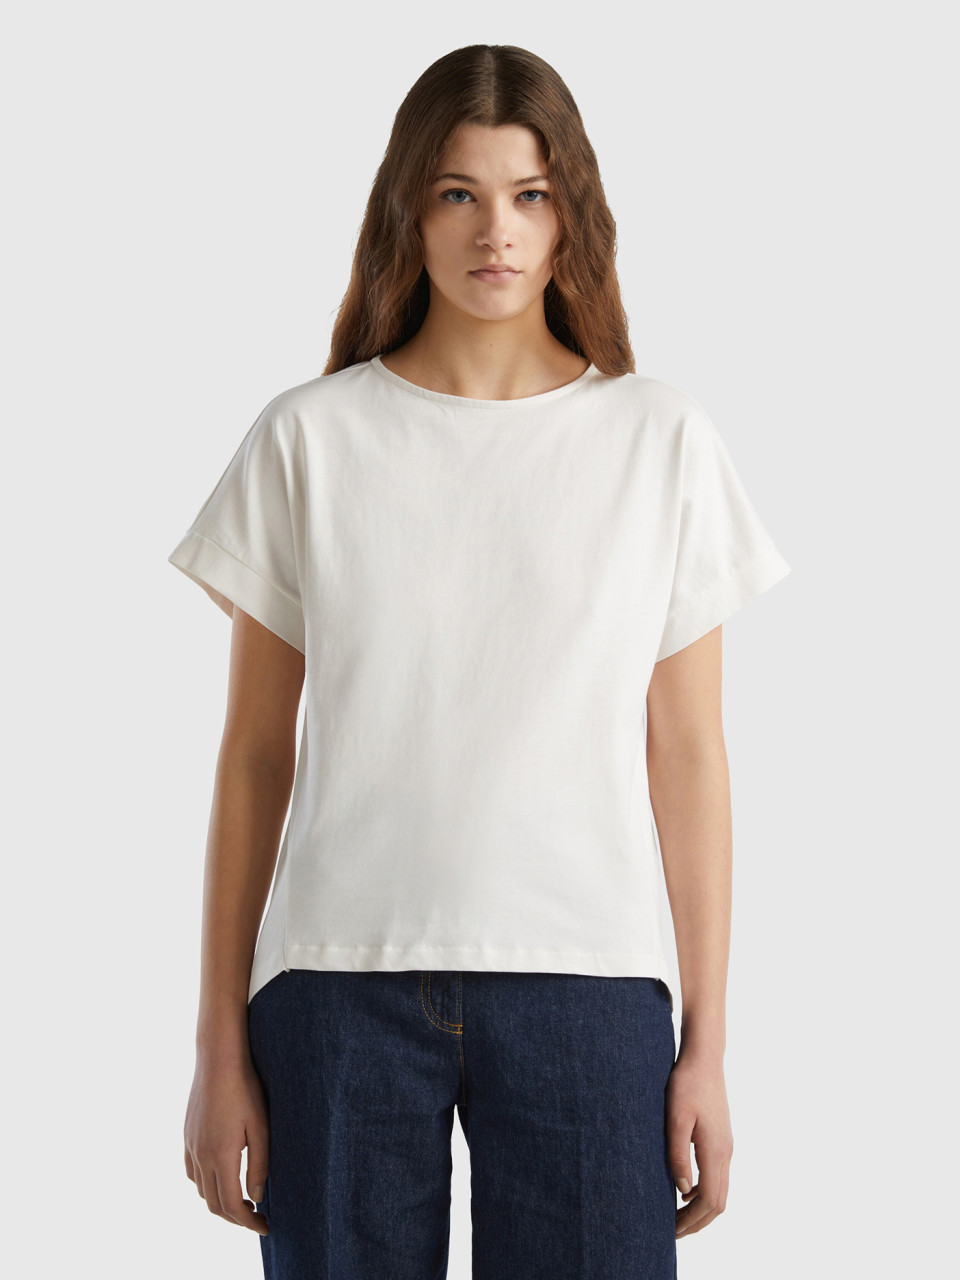 Benetton, T-shirt With Kimono Sleeves, White, Women